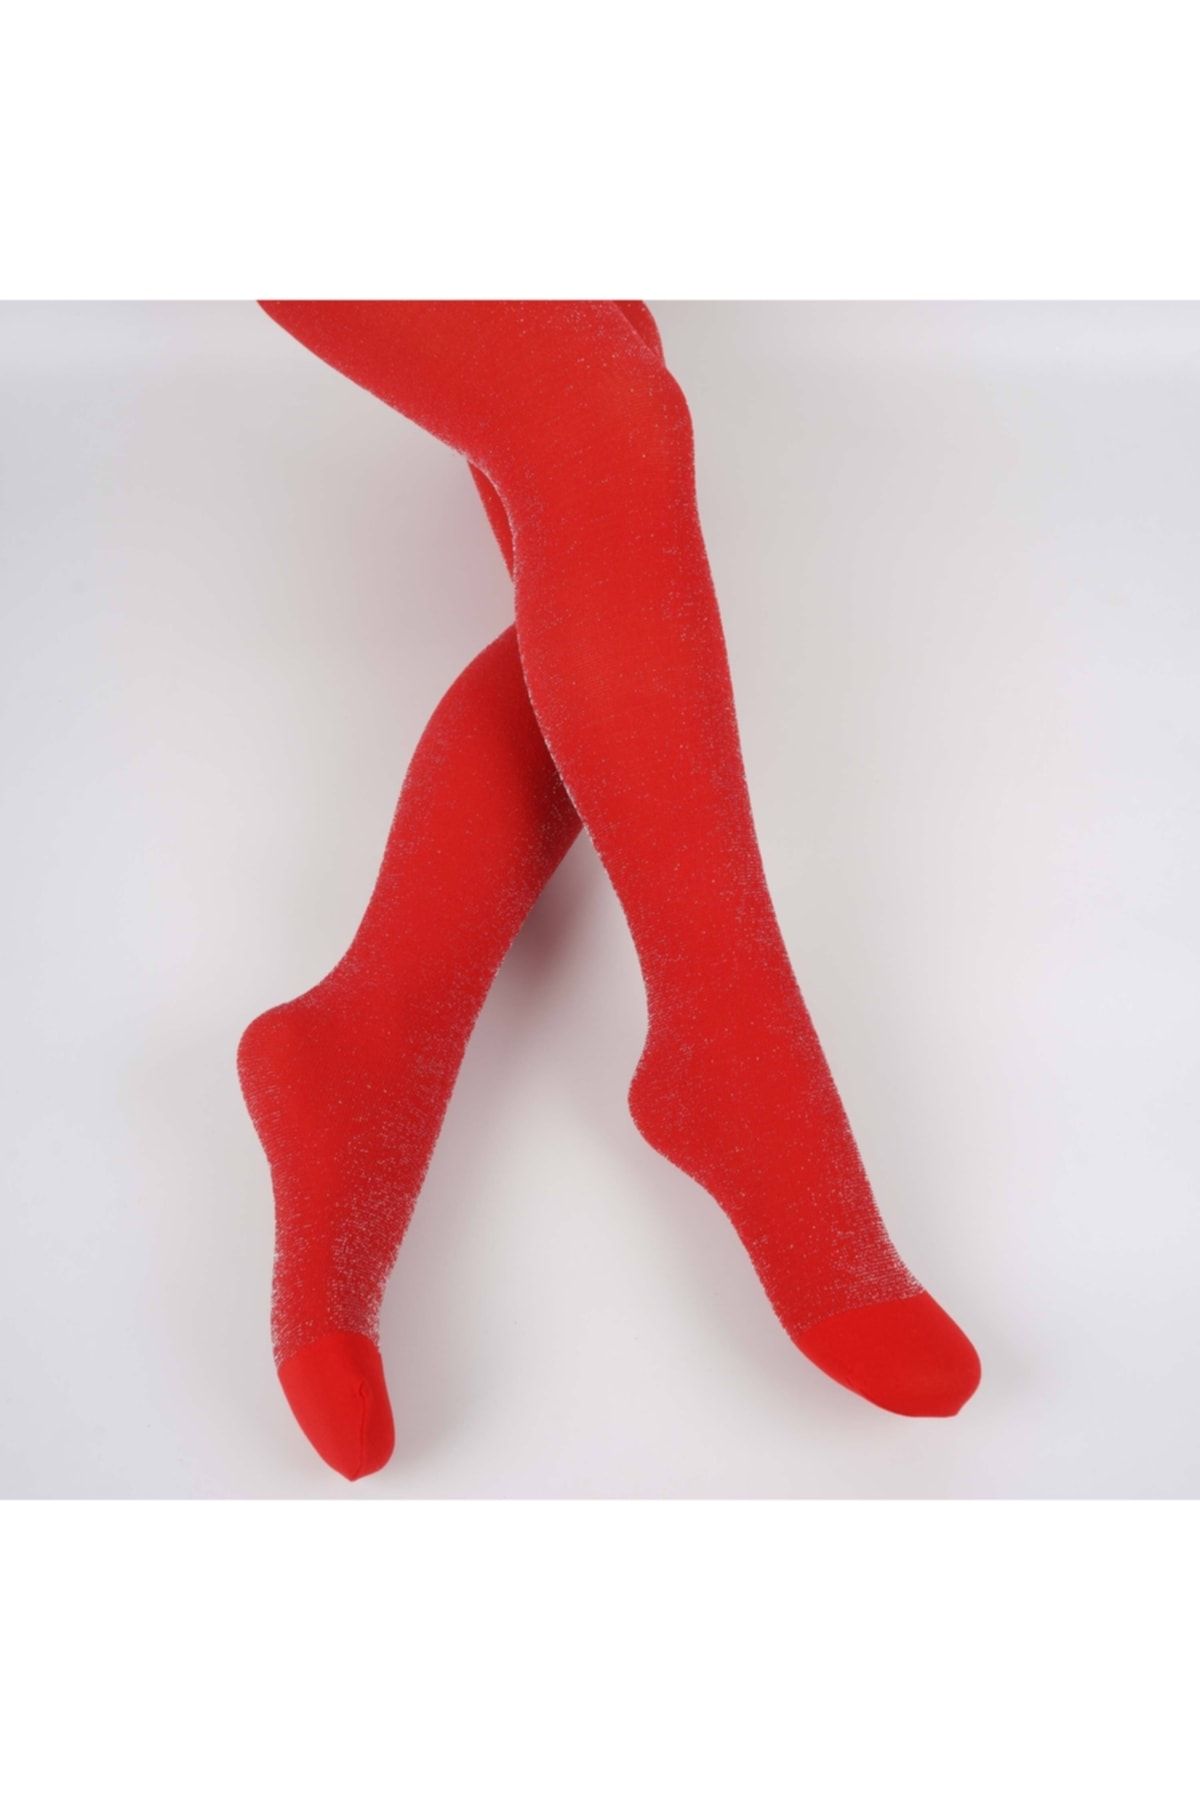 Katamino Multi Simli Kız Çocuk Külotlu Çorap